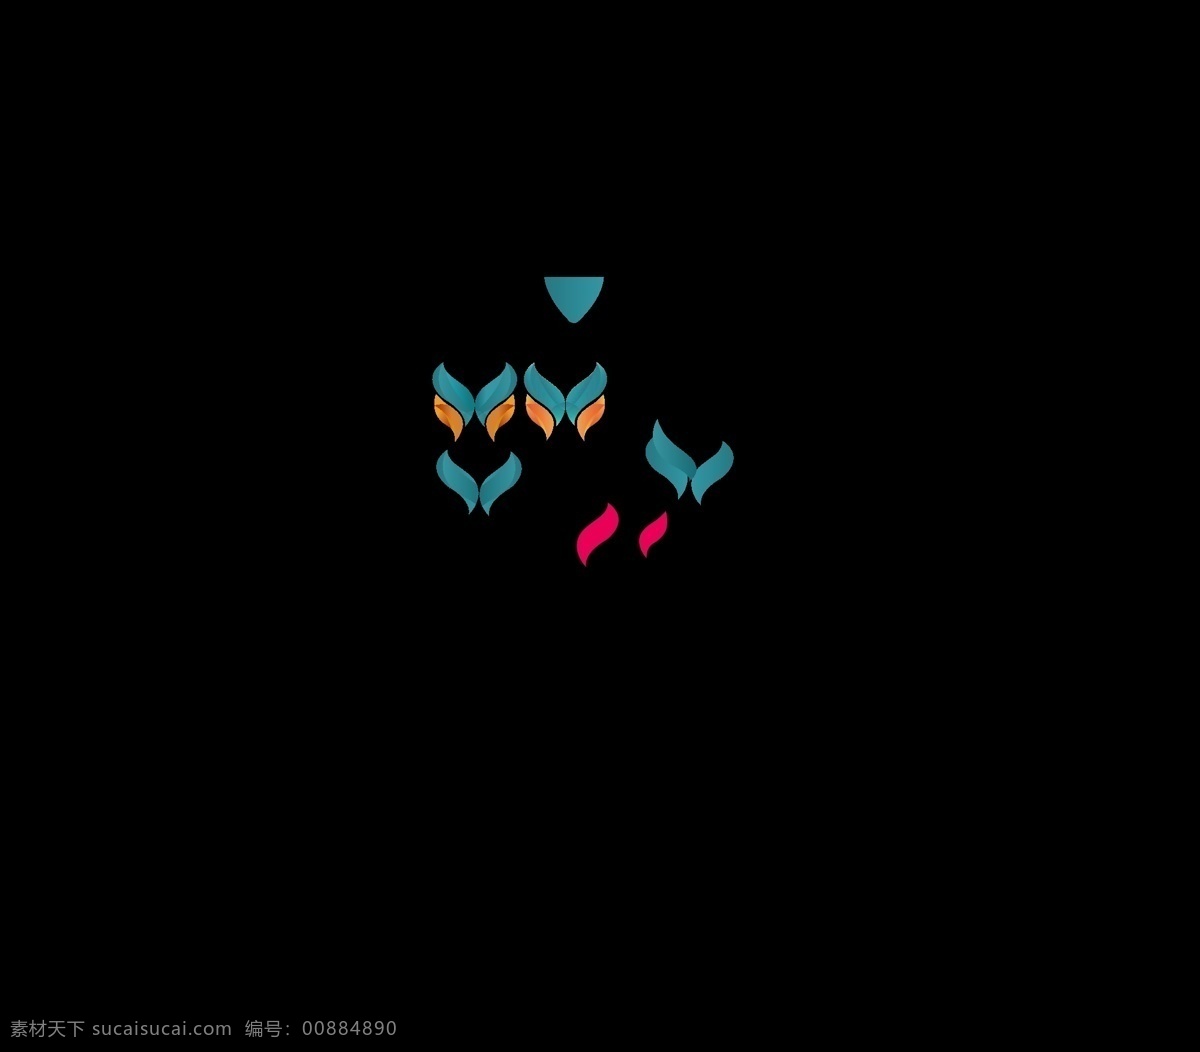 蝴蝶 形状 创意 变形 动物 标志图标 企业 logo 标志